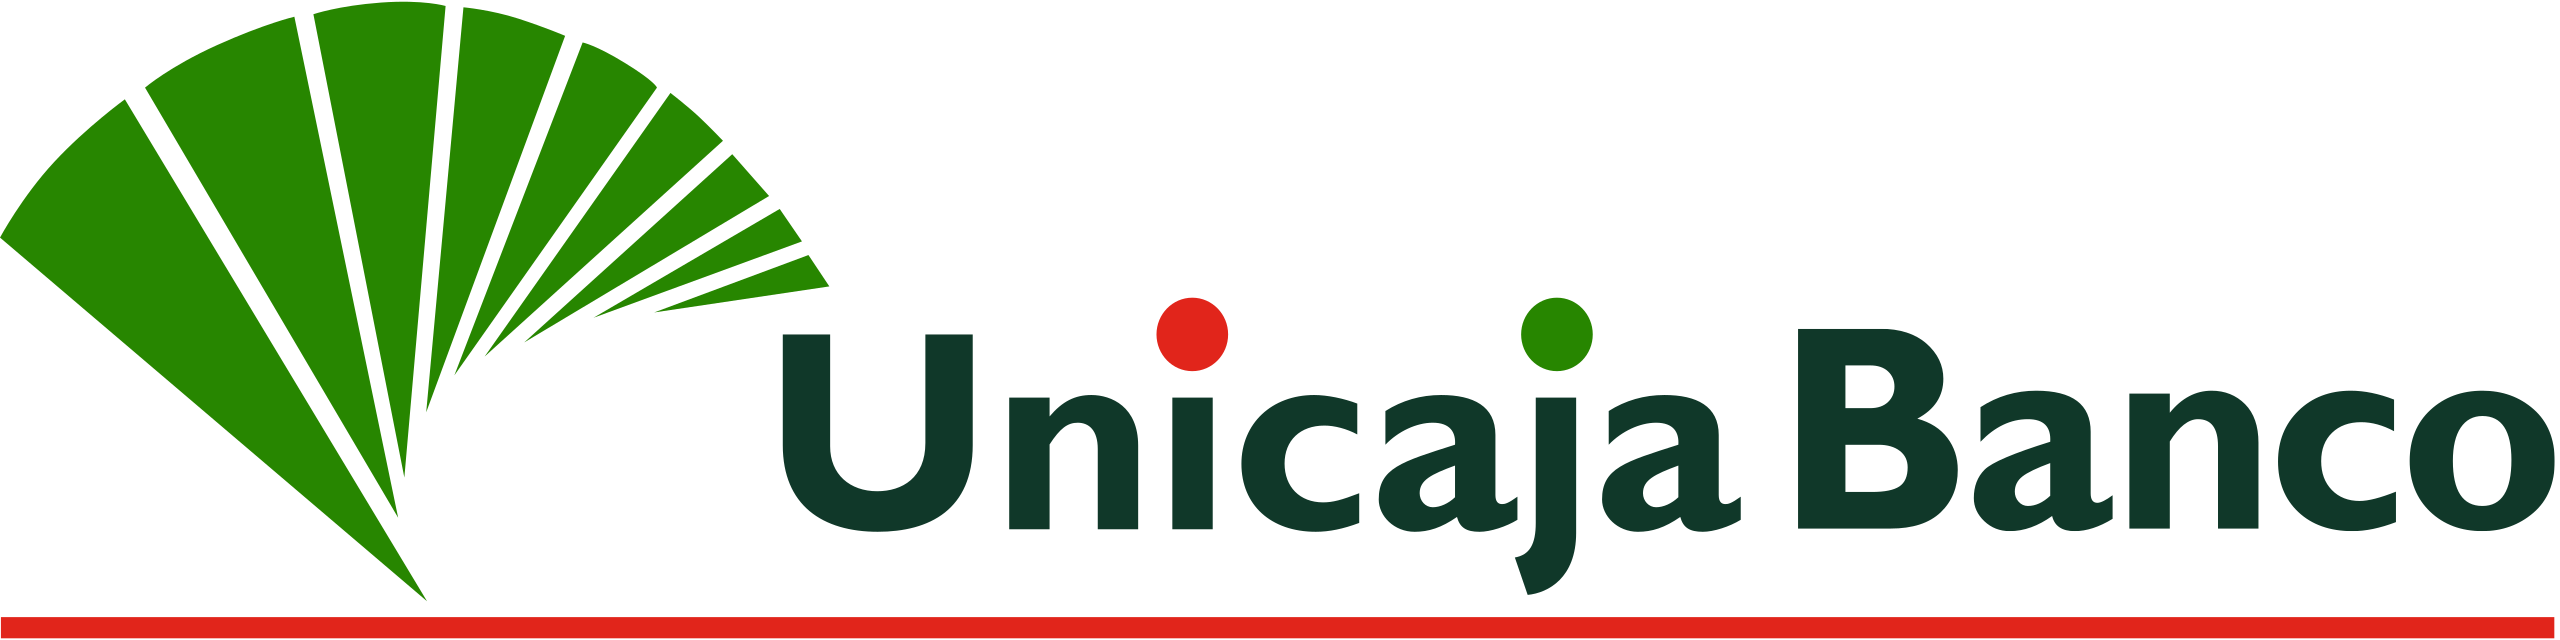 Logotipo_Unicaja_Banco.svg.png